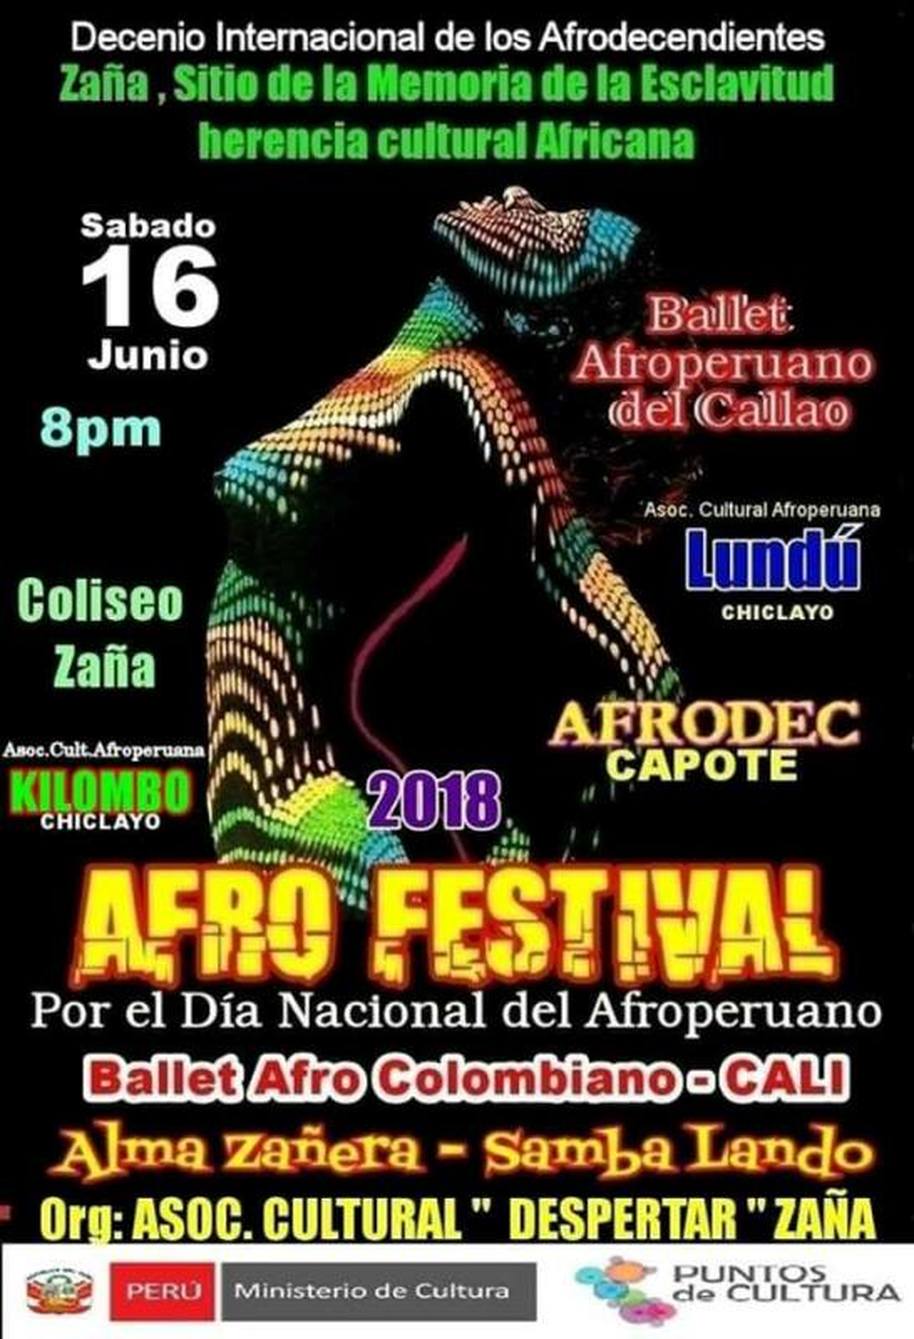 Asociación Cultural Despertar Zaña - Afro Festival - Agenda CIX